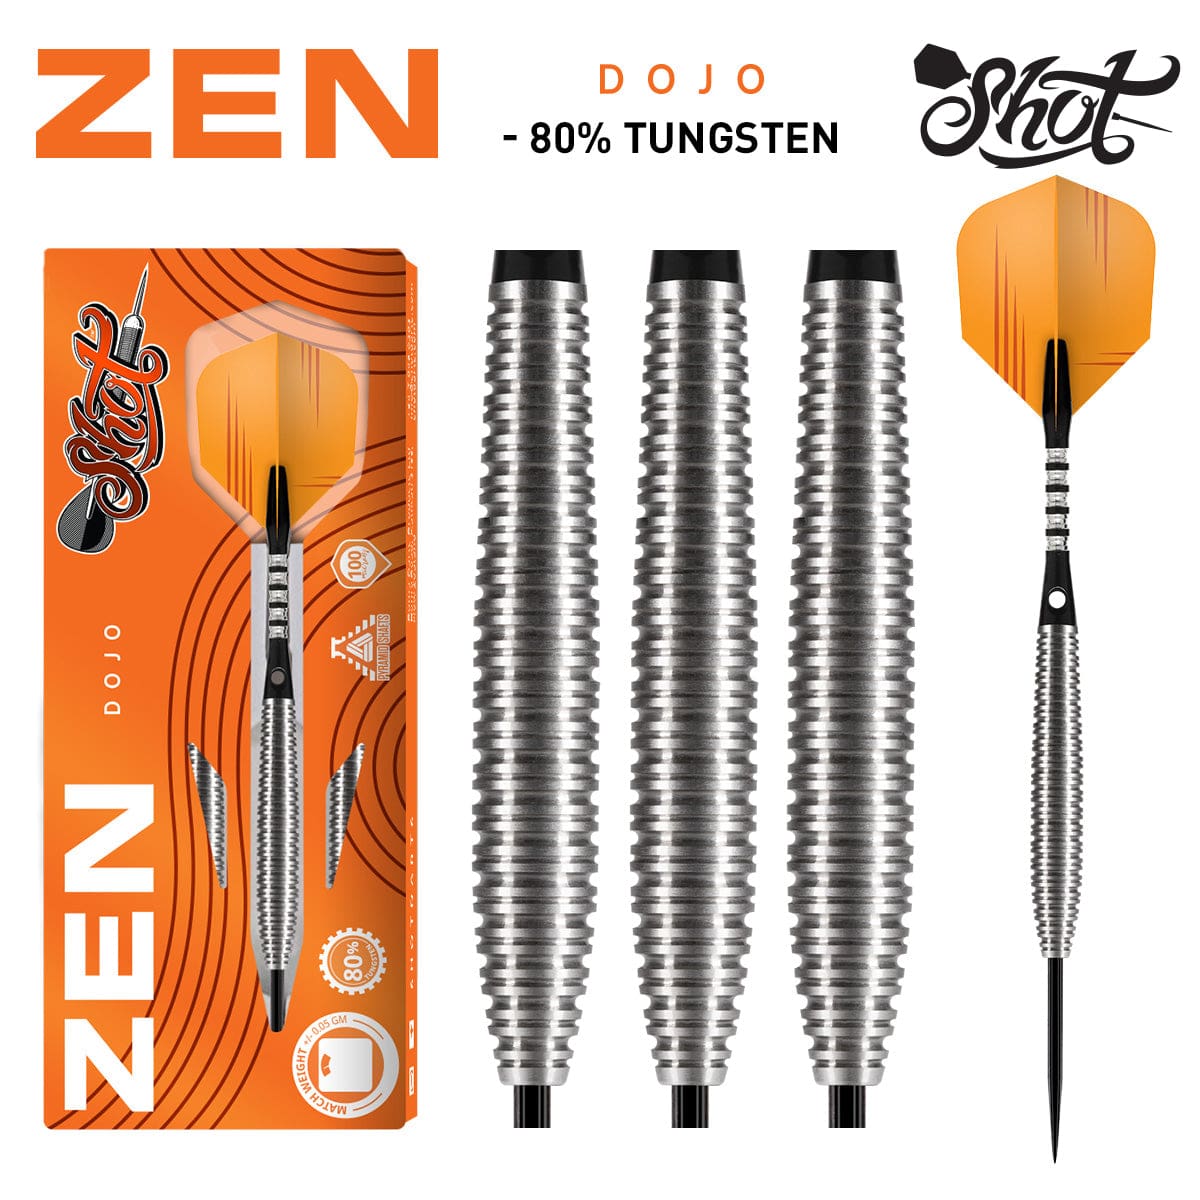 Zen Dojo Steel Tip Dart Set - 80% Tungsten Barrels